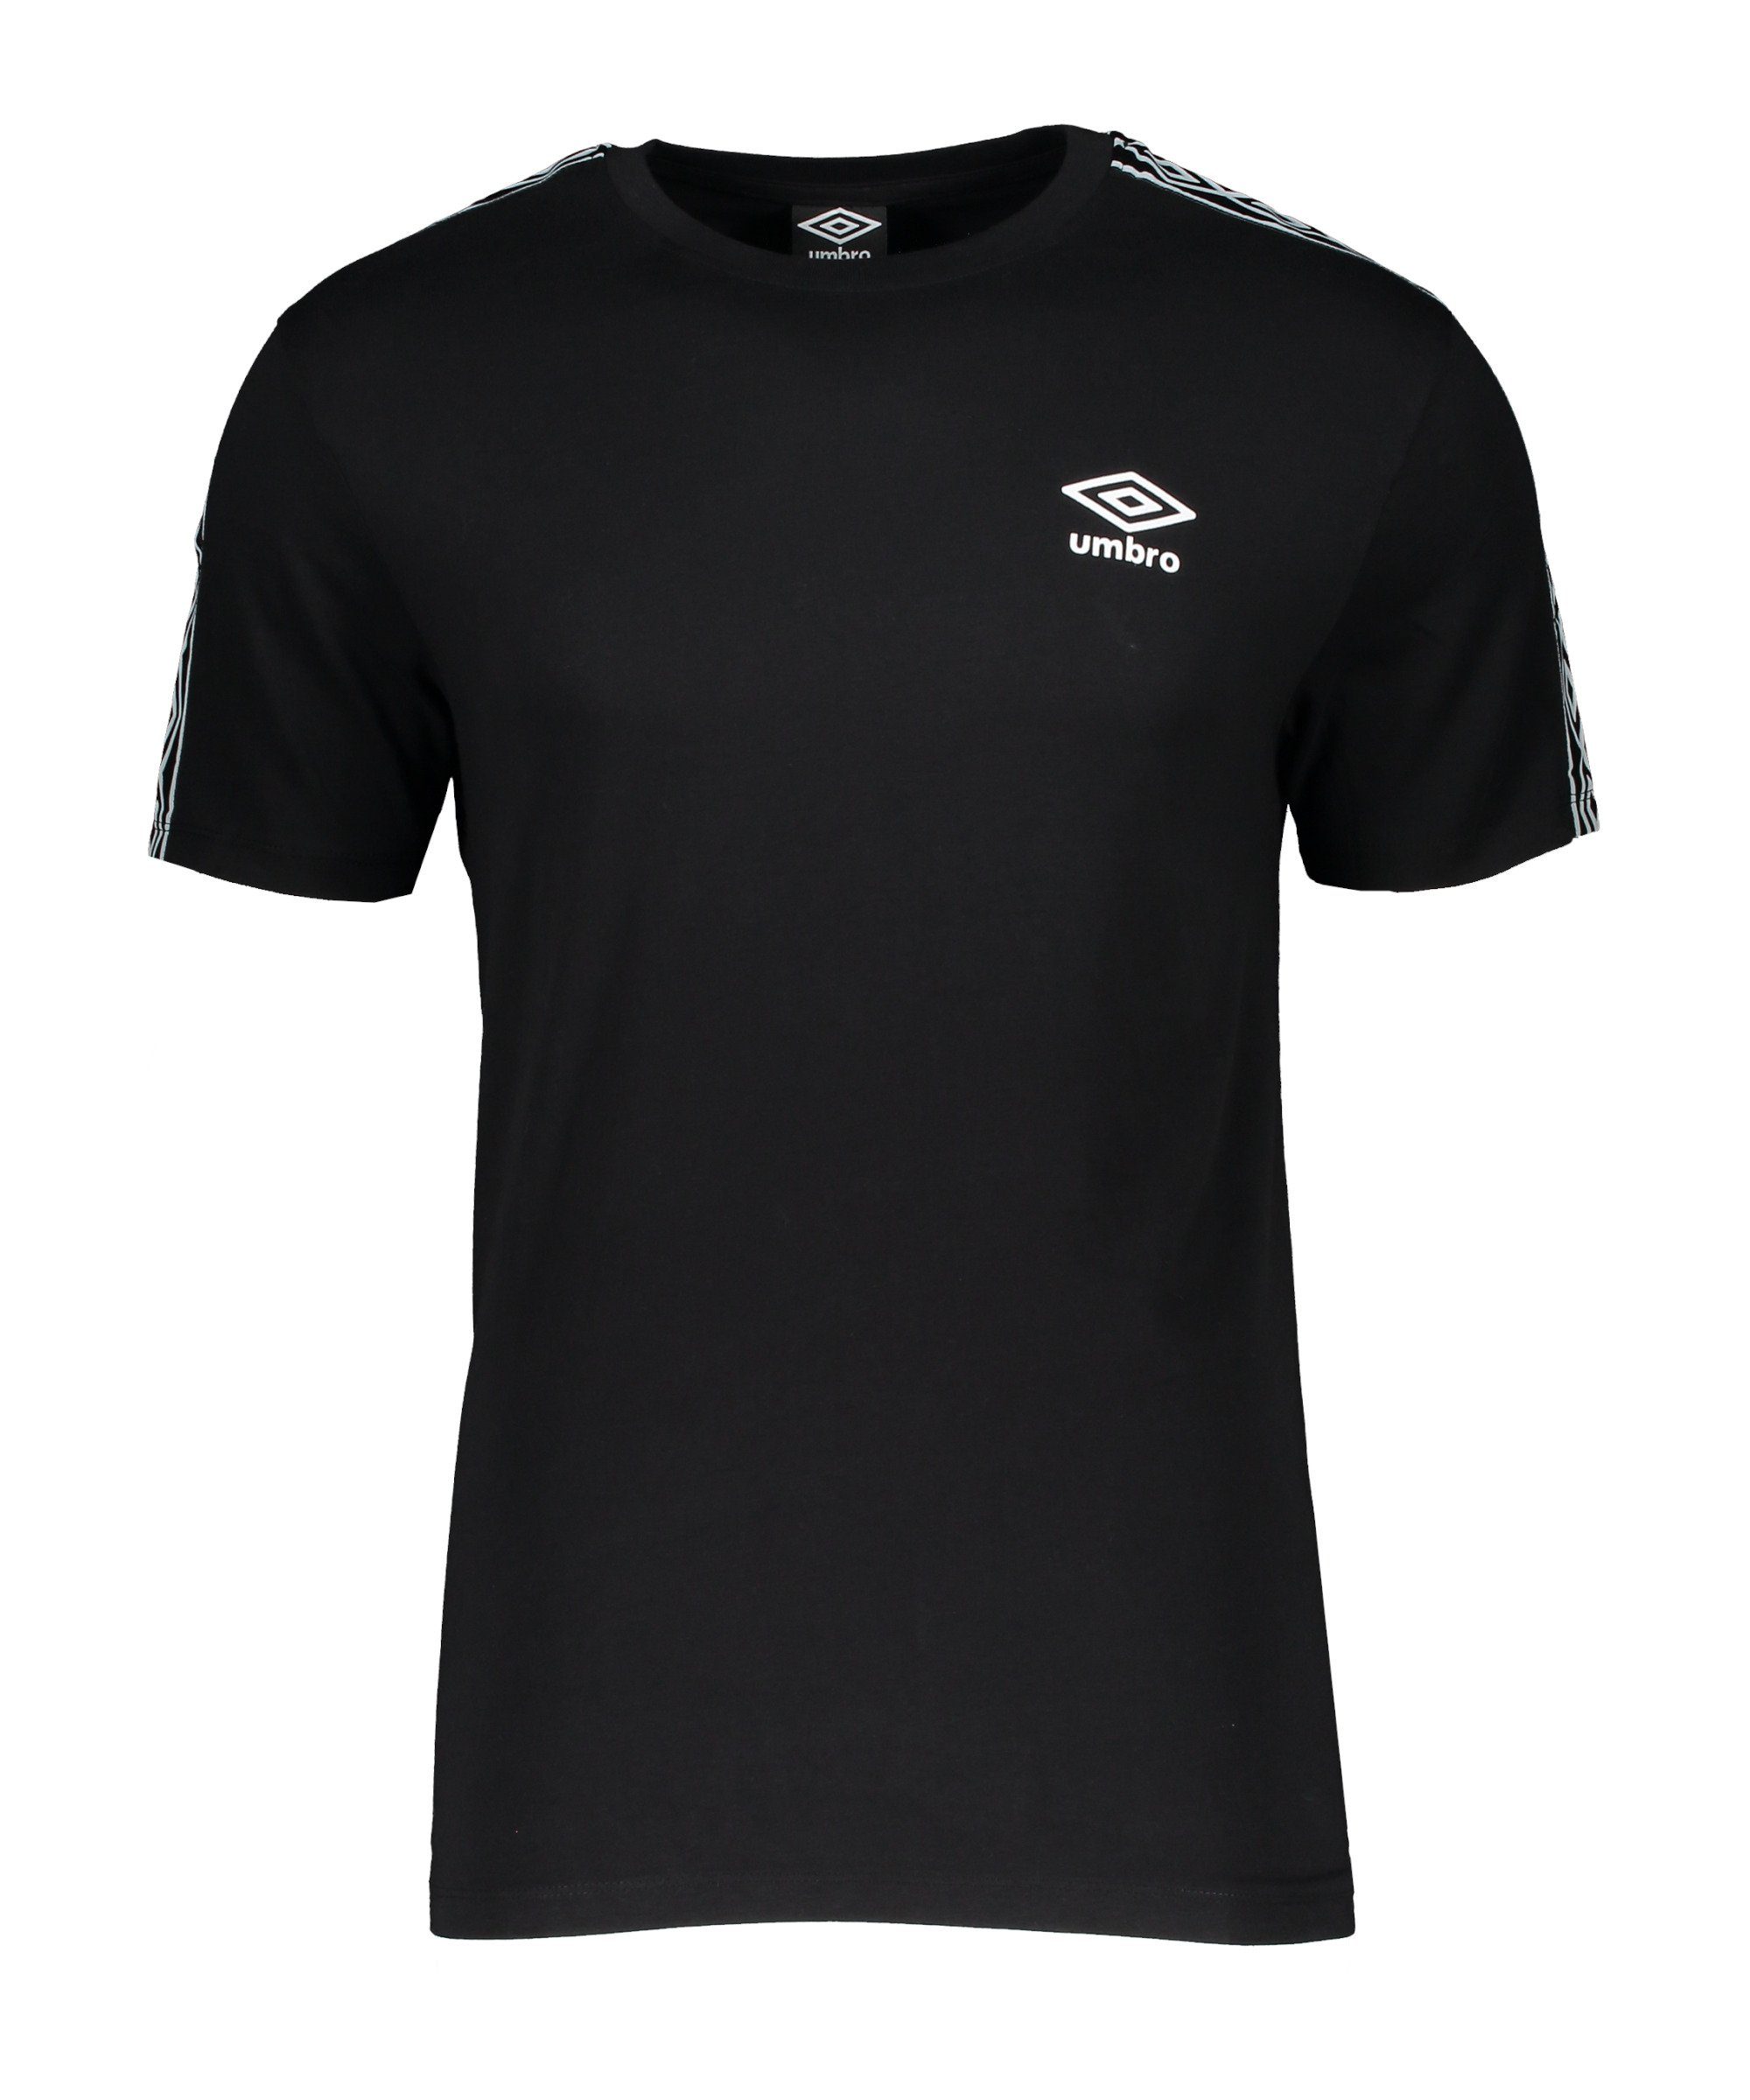 Umbro T-Shirt Retro Taped T-Shirt default schwarzweiss